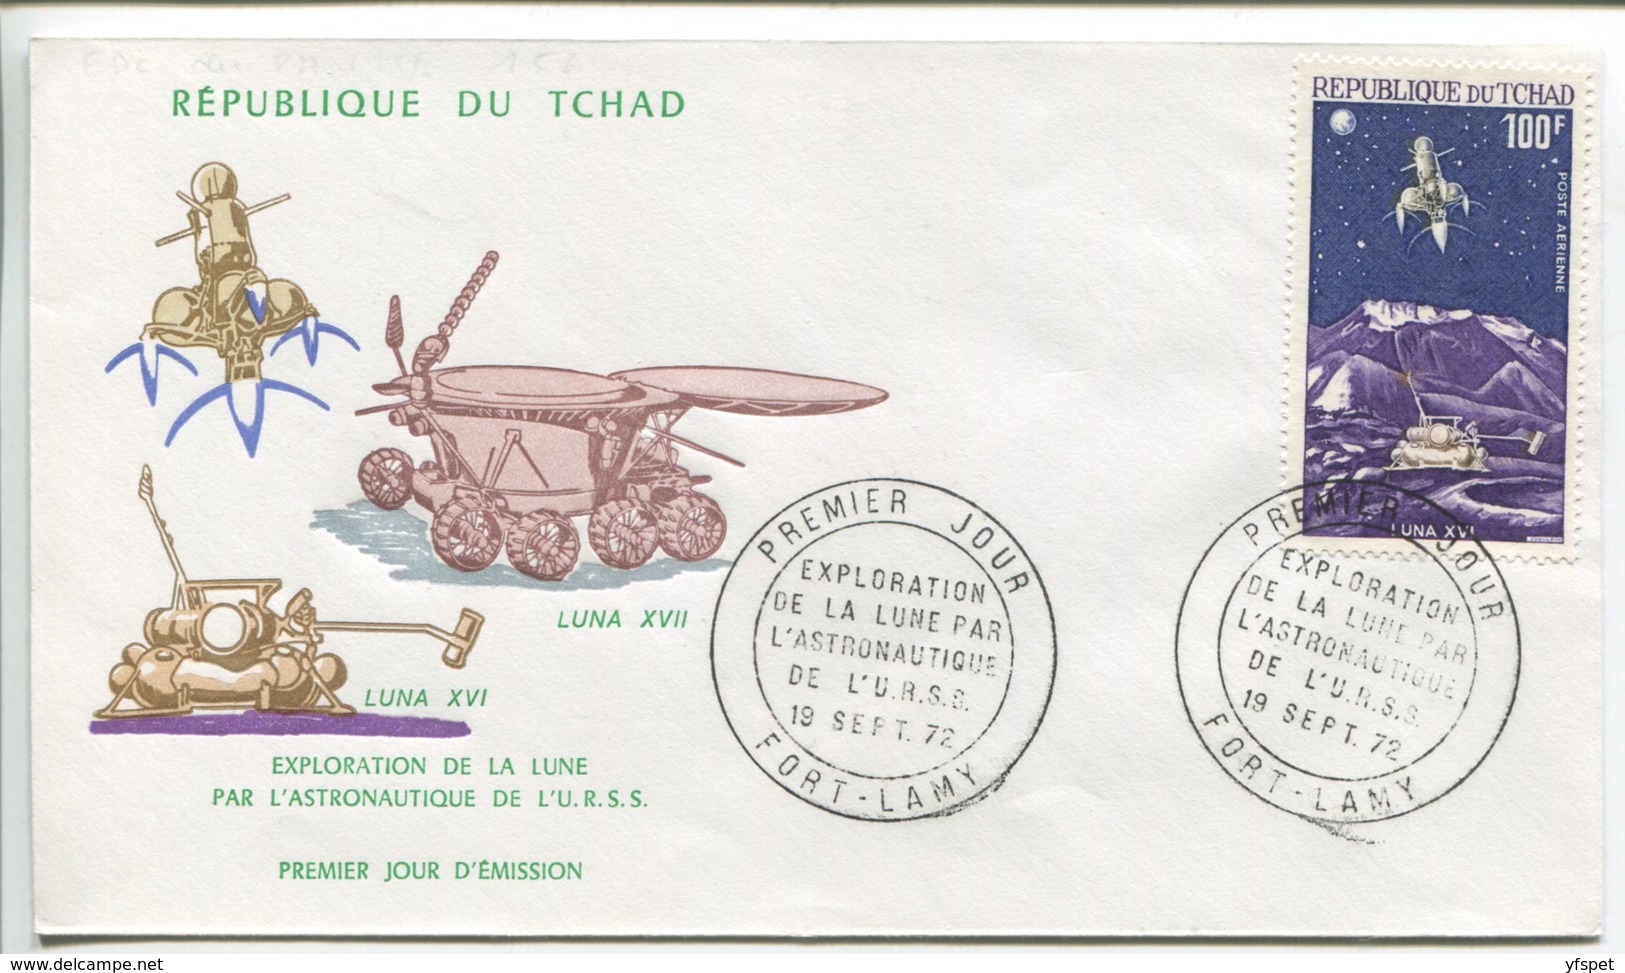 Luna 16-17, Tchad, 1972 - Africa